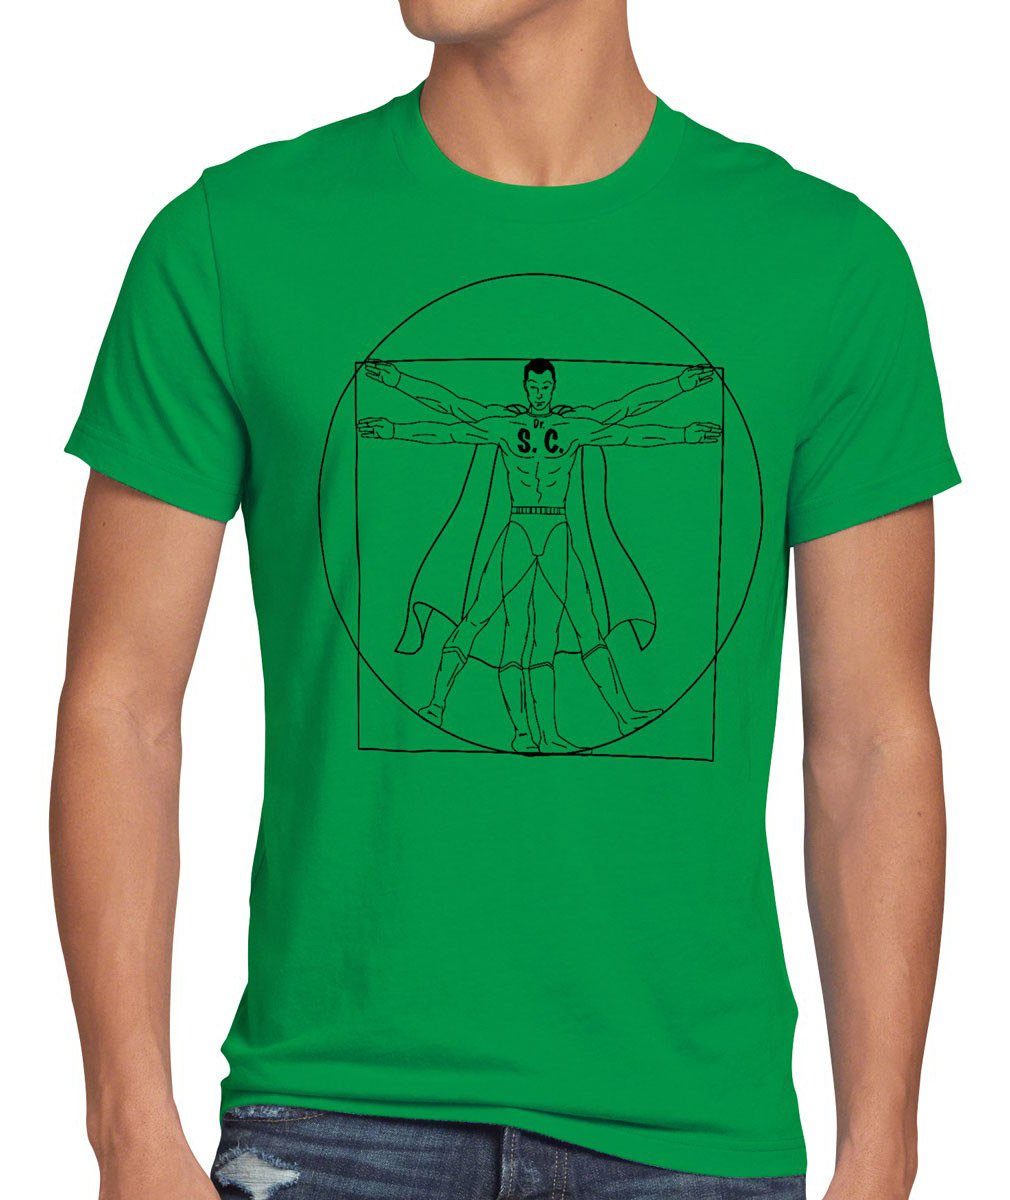 style3 Print-Shirt Herren T-Shirt Sheldon theory Da Vinci Cooper big bang Vitruvianischer Mensch grün